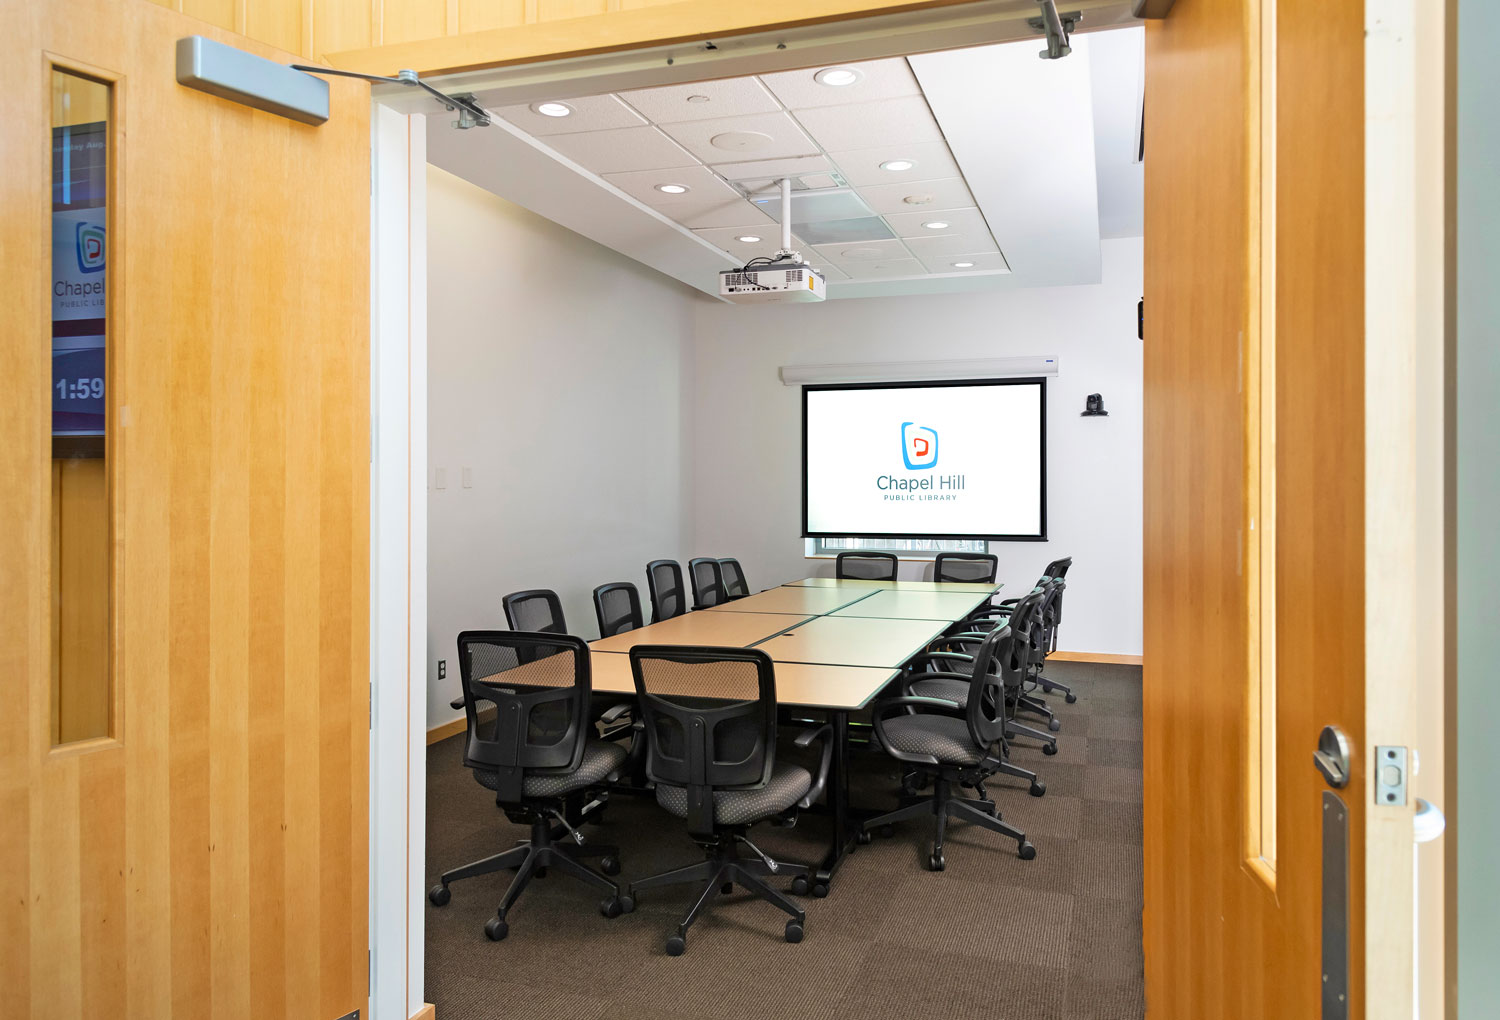 Die kleineren Meetingräume werden oft von Ausschüssen zur Planung von Veranstaltungen und für Vorstand-Meetings von Non-Profit-Organisationen genutzt.